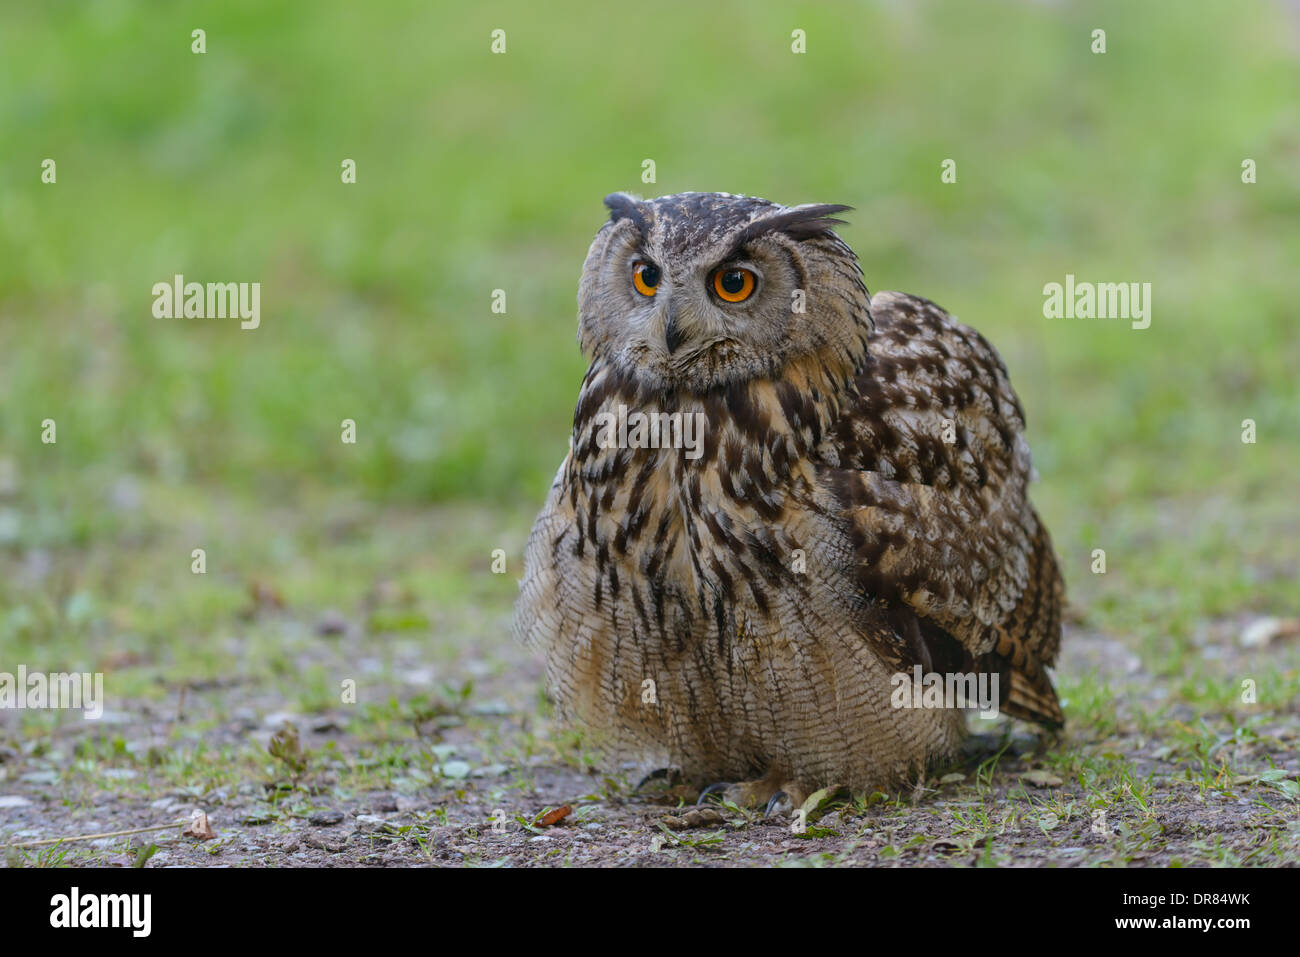 Uhu, Bubo bubo, European eagle owl Stock Photo